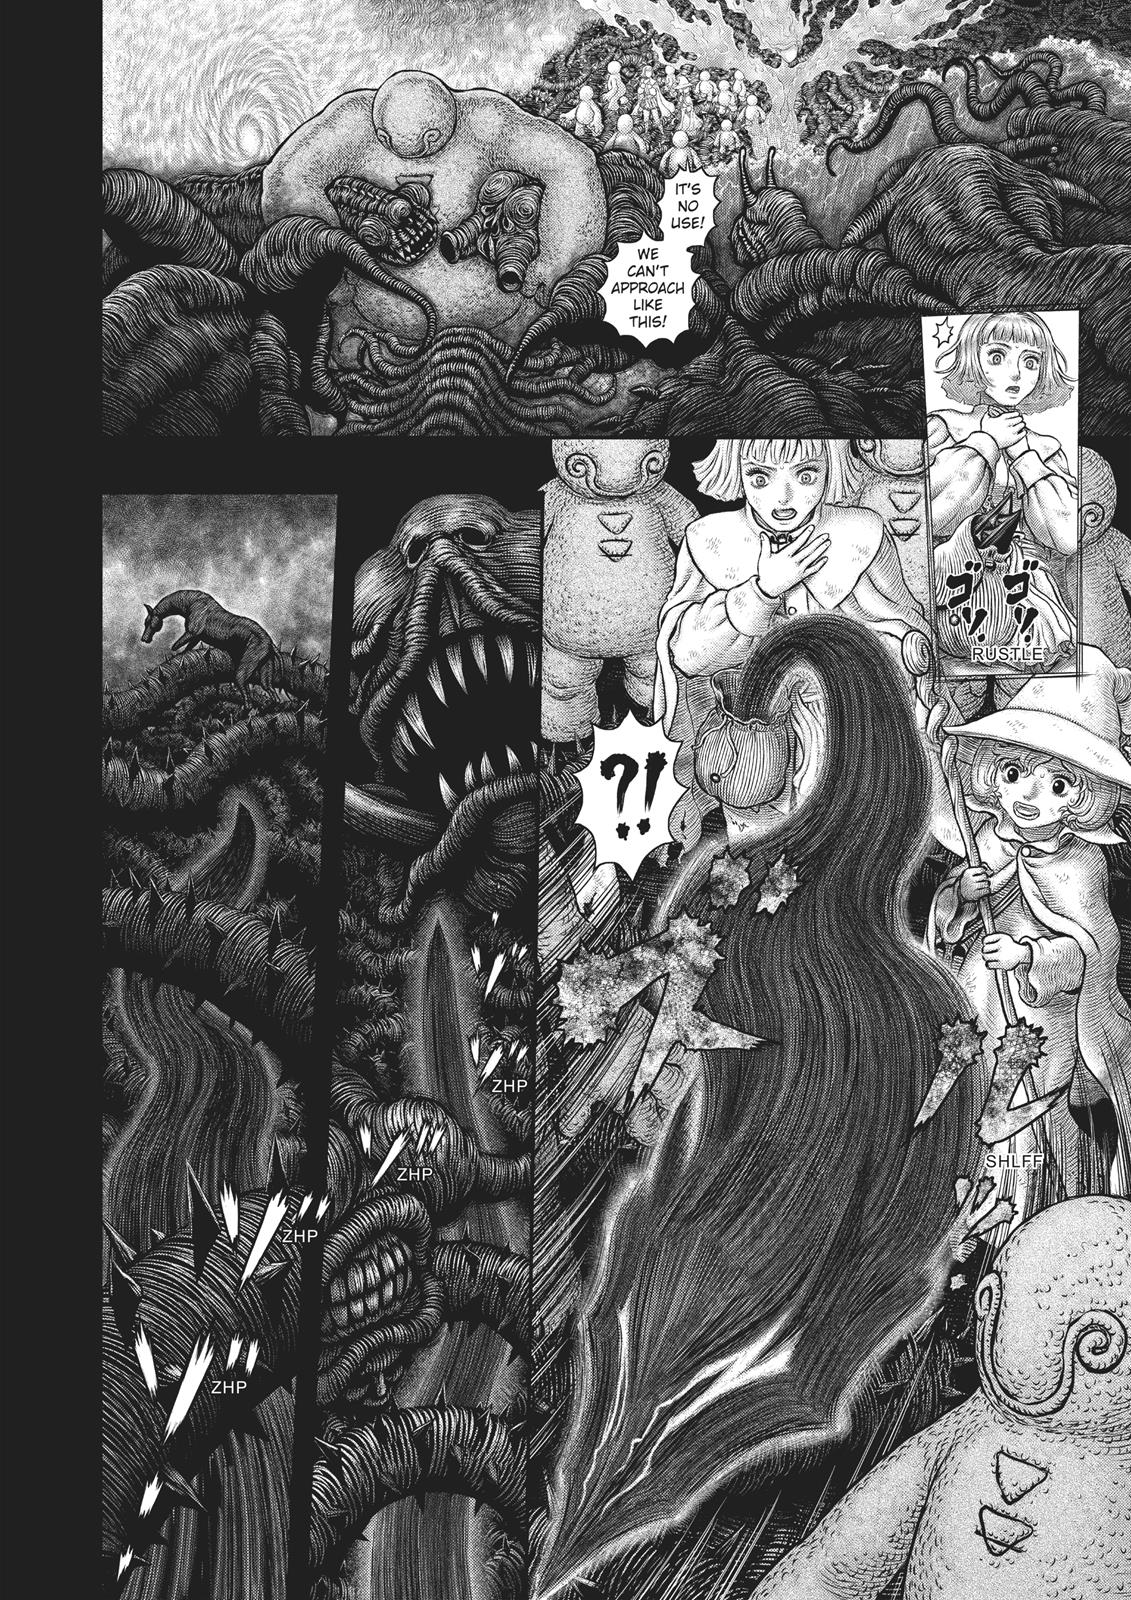 Berserk Manga Chapter 352 image 15